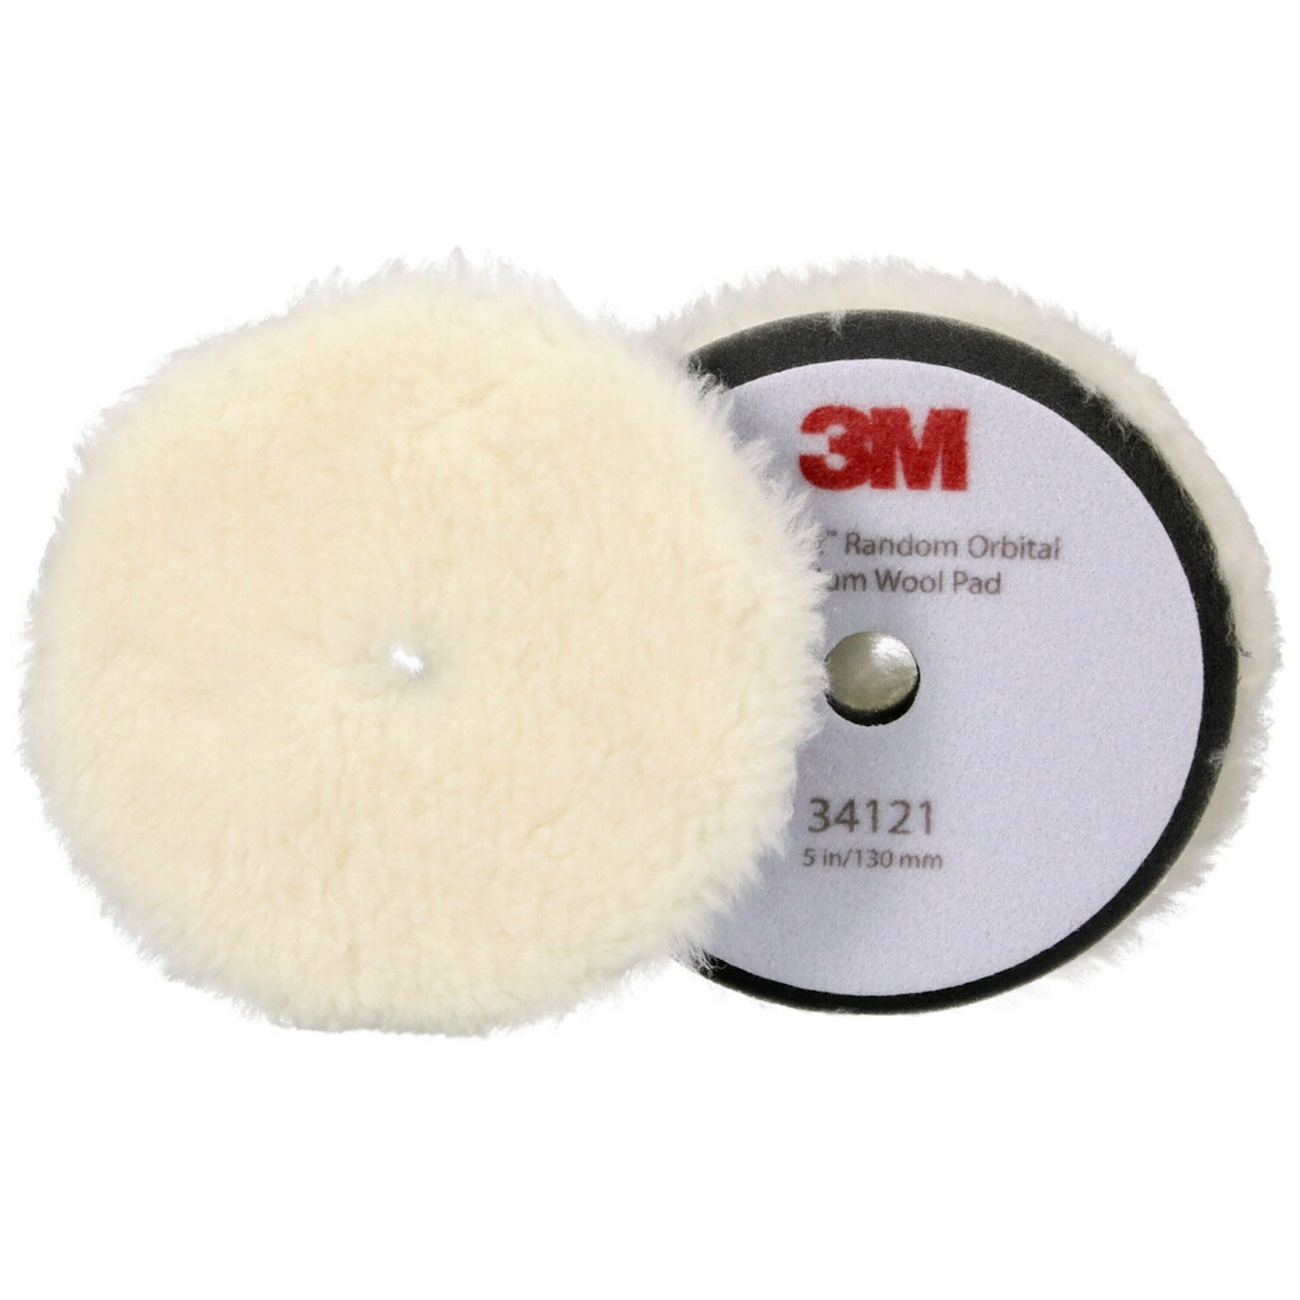 3M Perfect-it polijstpad met polijstvel voor excentrische polijstmachine, medium, wit, 130 mm, 34121 (verpakking = 2 stuks)